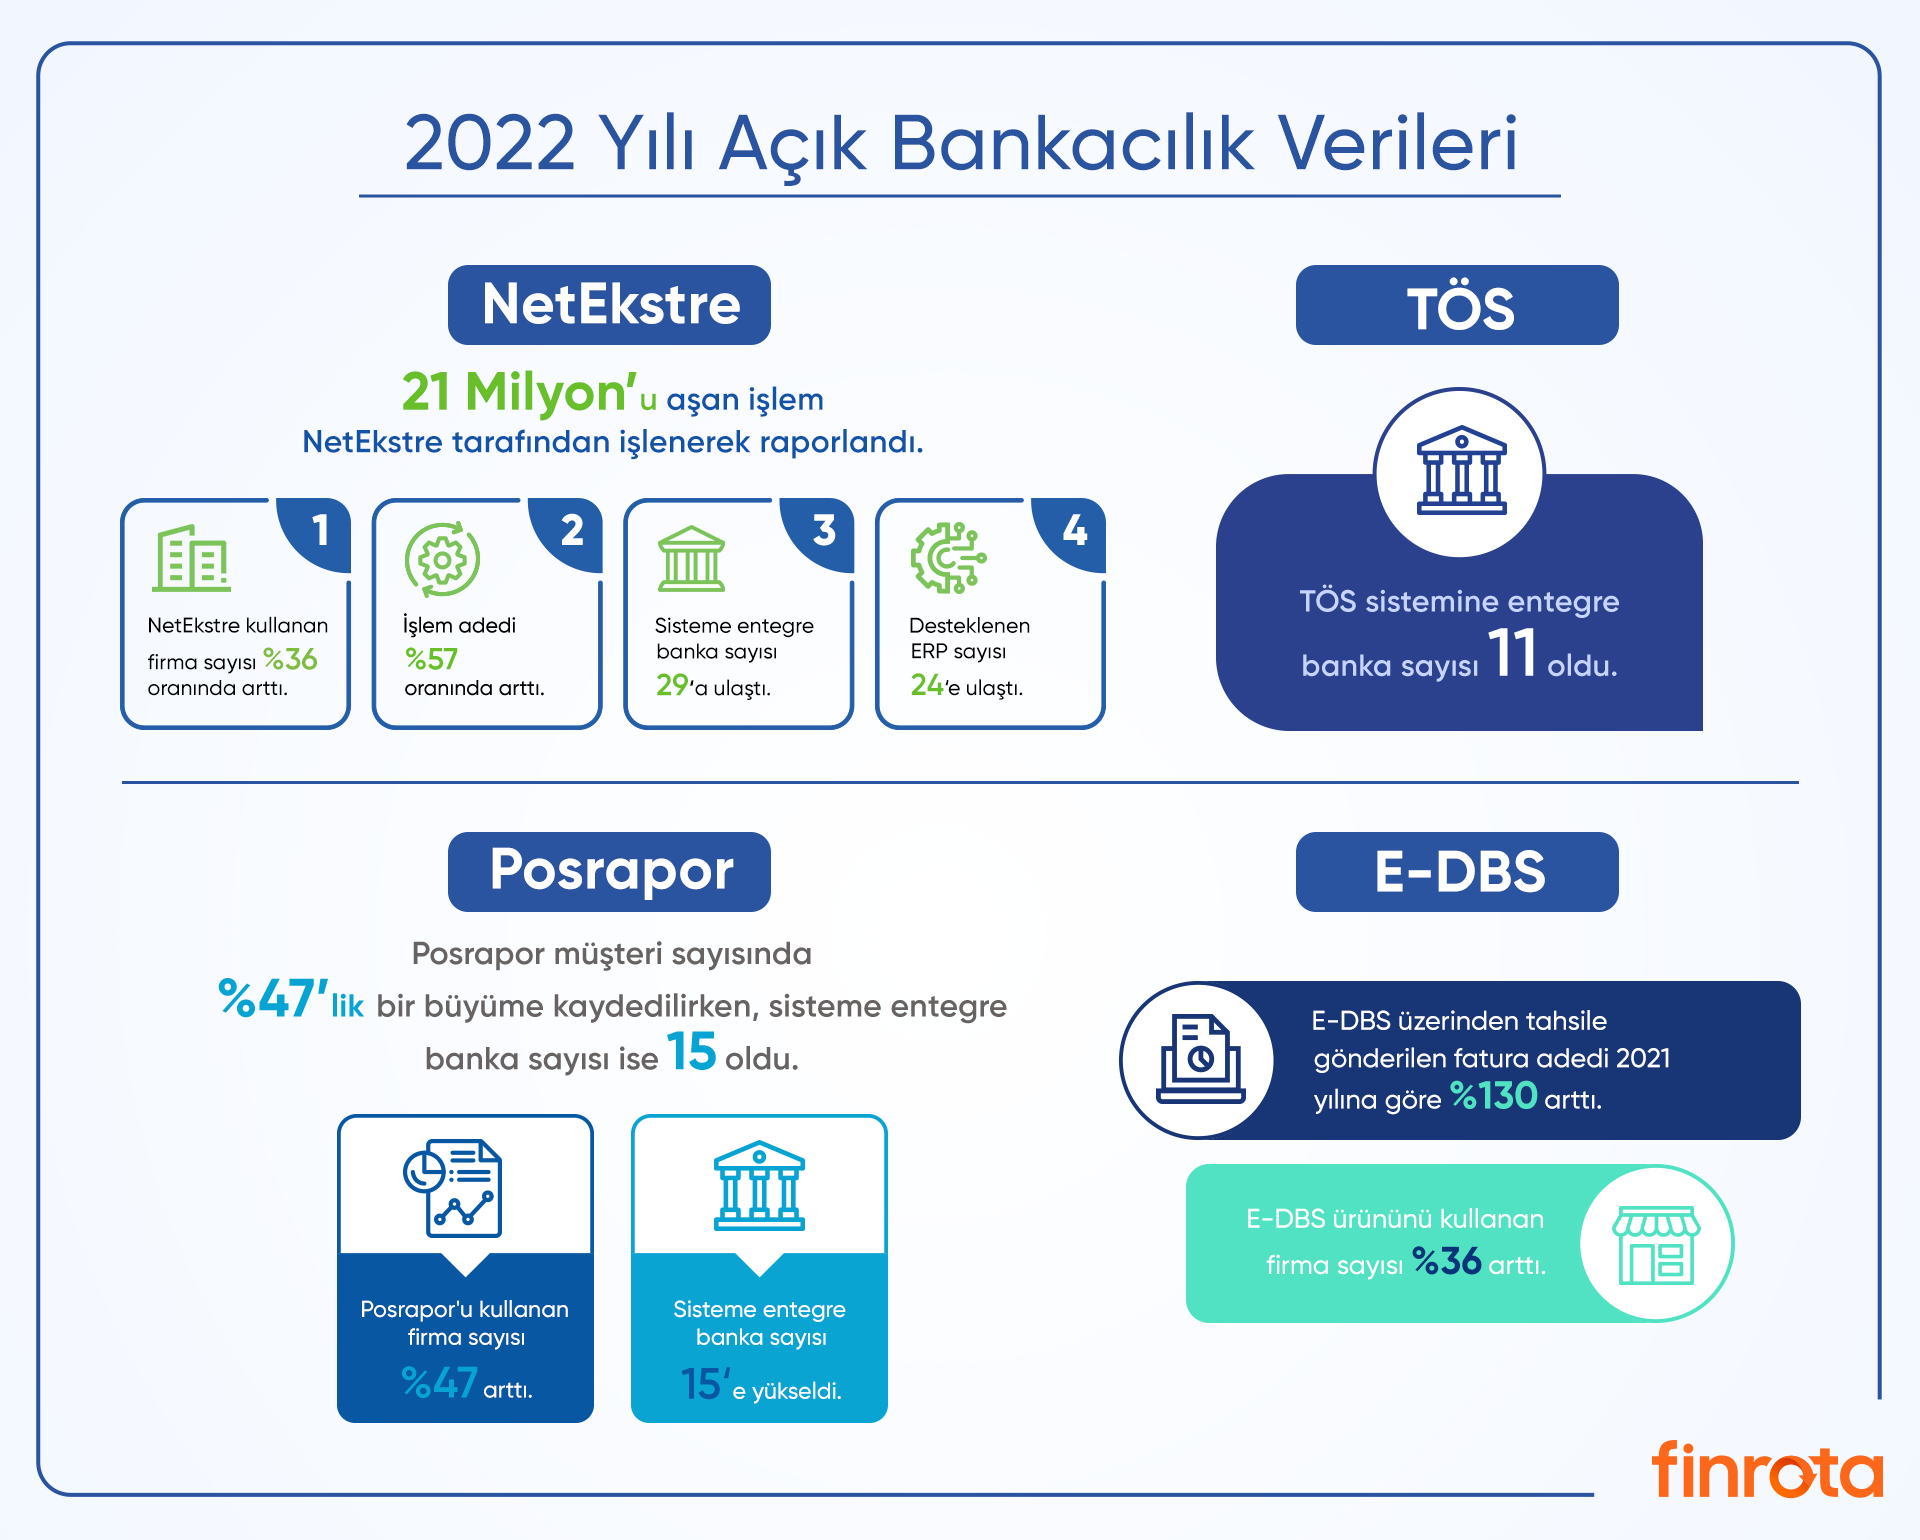 Açık Bankacılık Ürünü NetEkstre'de, 2022 yılında işlenerek raporlanan hesap hareketi sayısı 21 milyonu aştı.